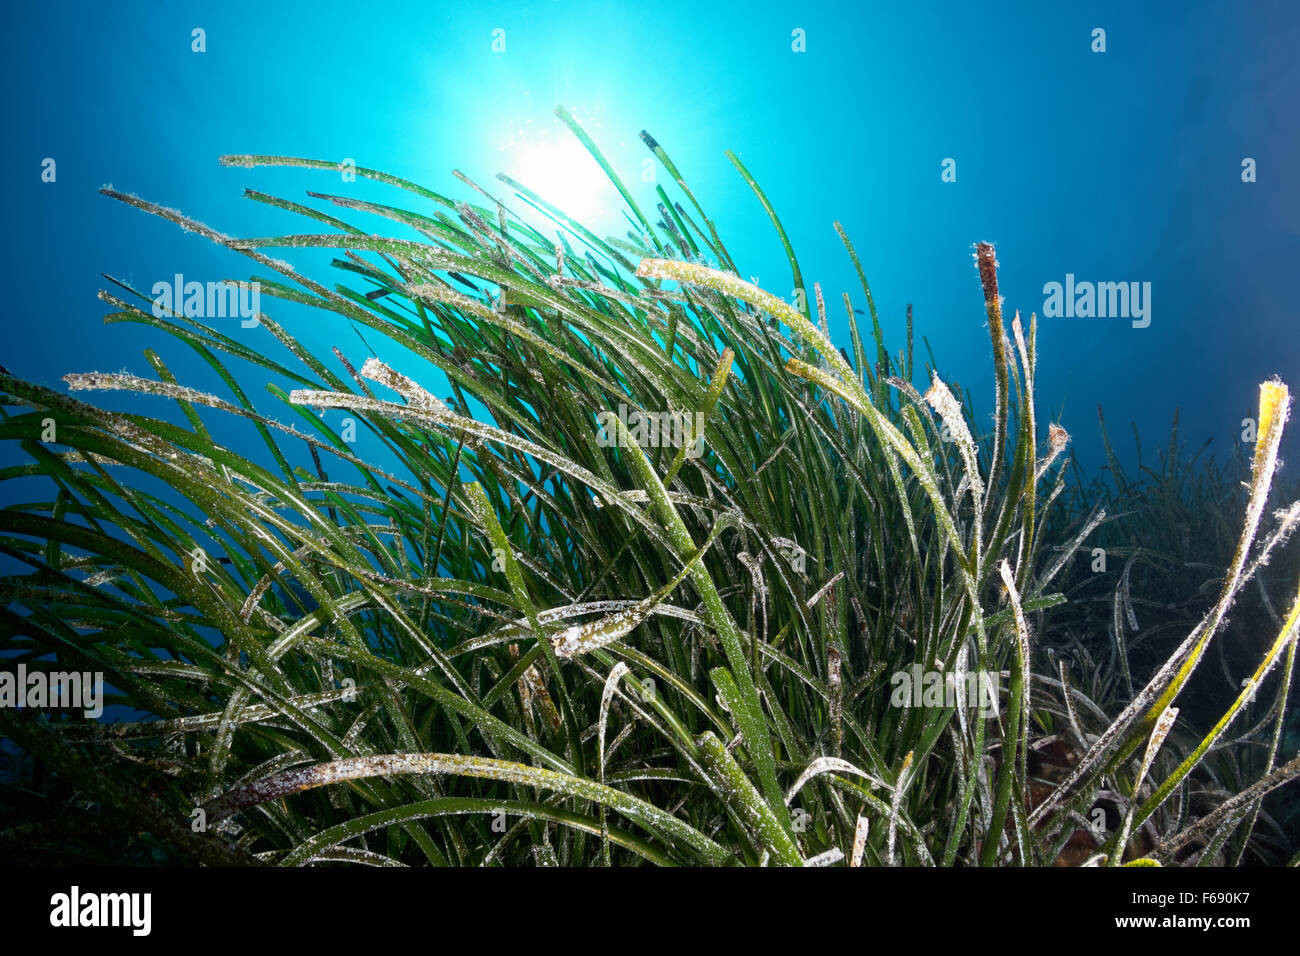 Nettuno erba o tapeweed mediterranea (Posidonia oceanica) in presenza di luce solare, isola di Corfu, Isole Ionie, Mare Mediterraneo Foto Stock